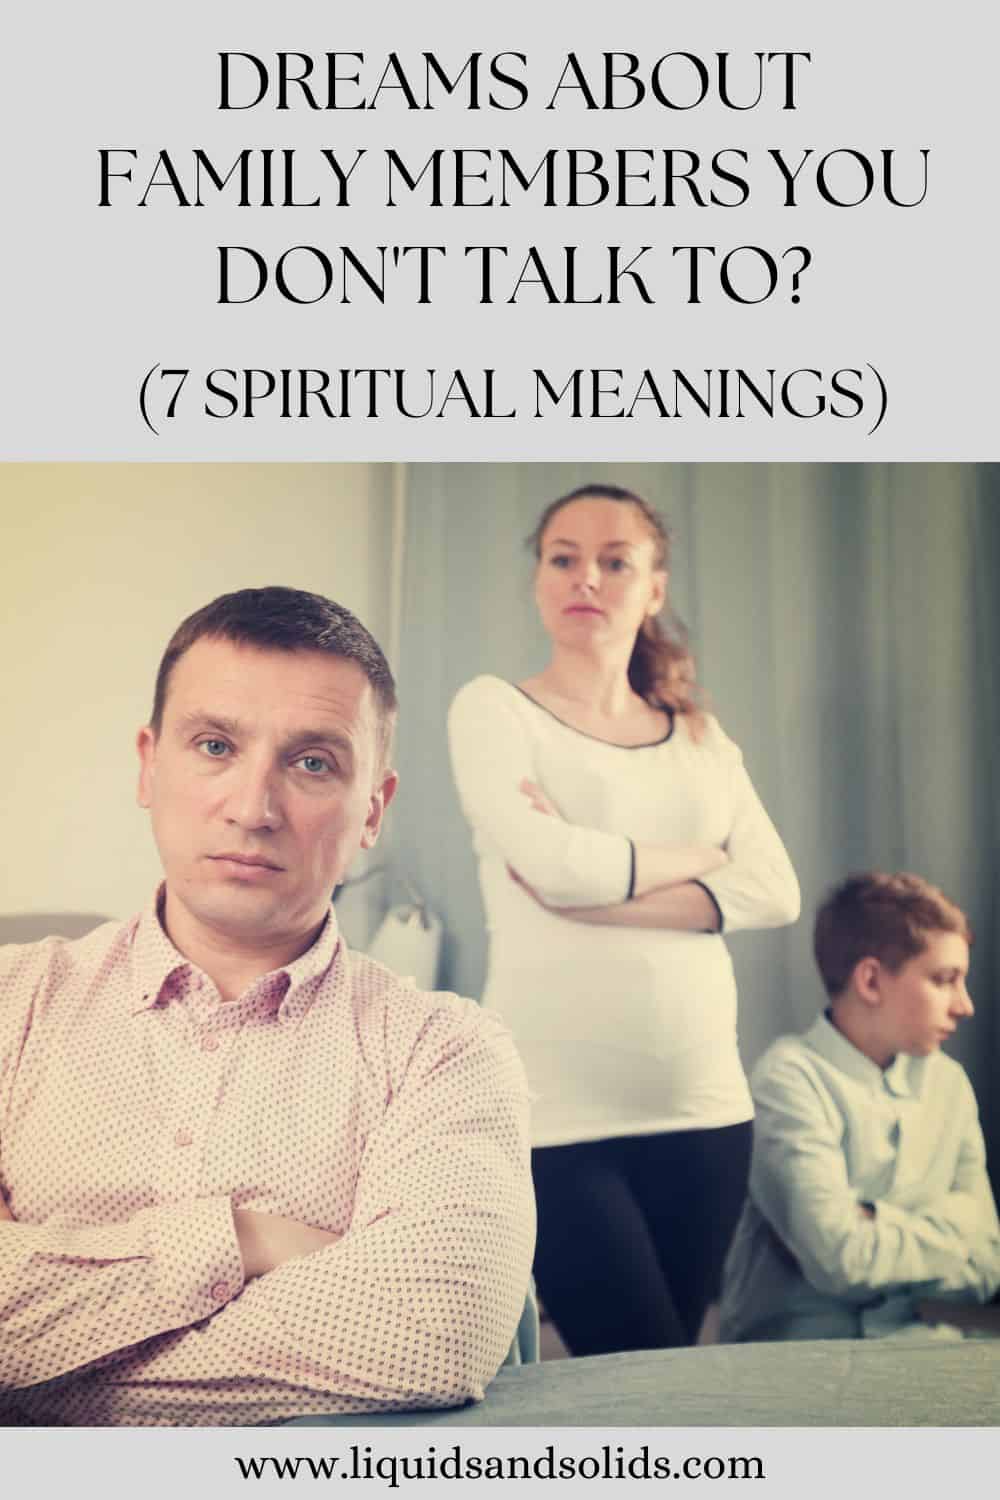  Rêves de membres de votre famille à qui vous ne parlez pas (7 significations spirituelles)